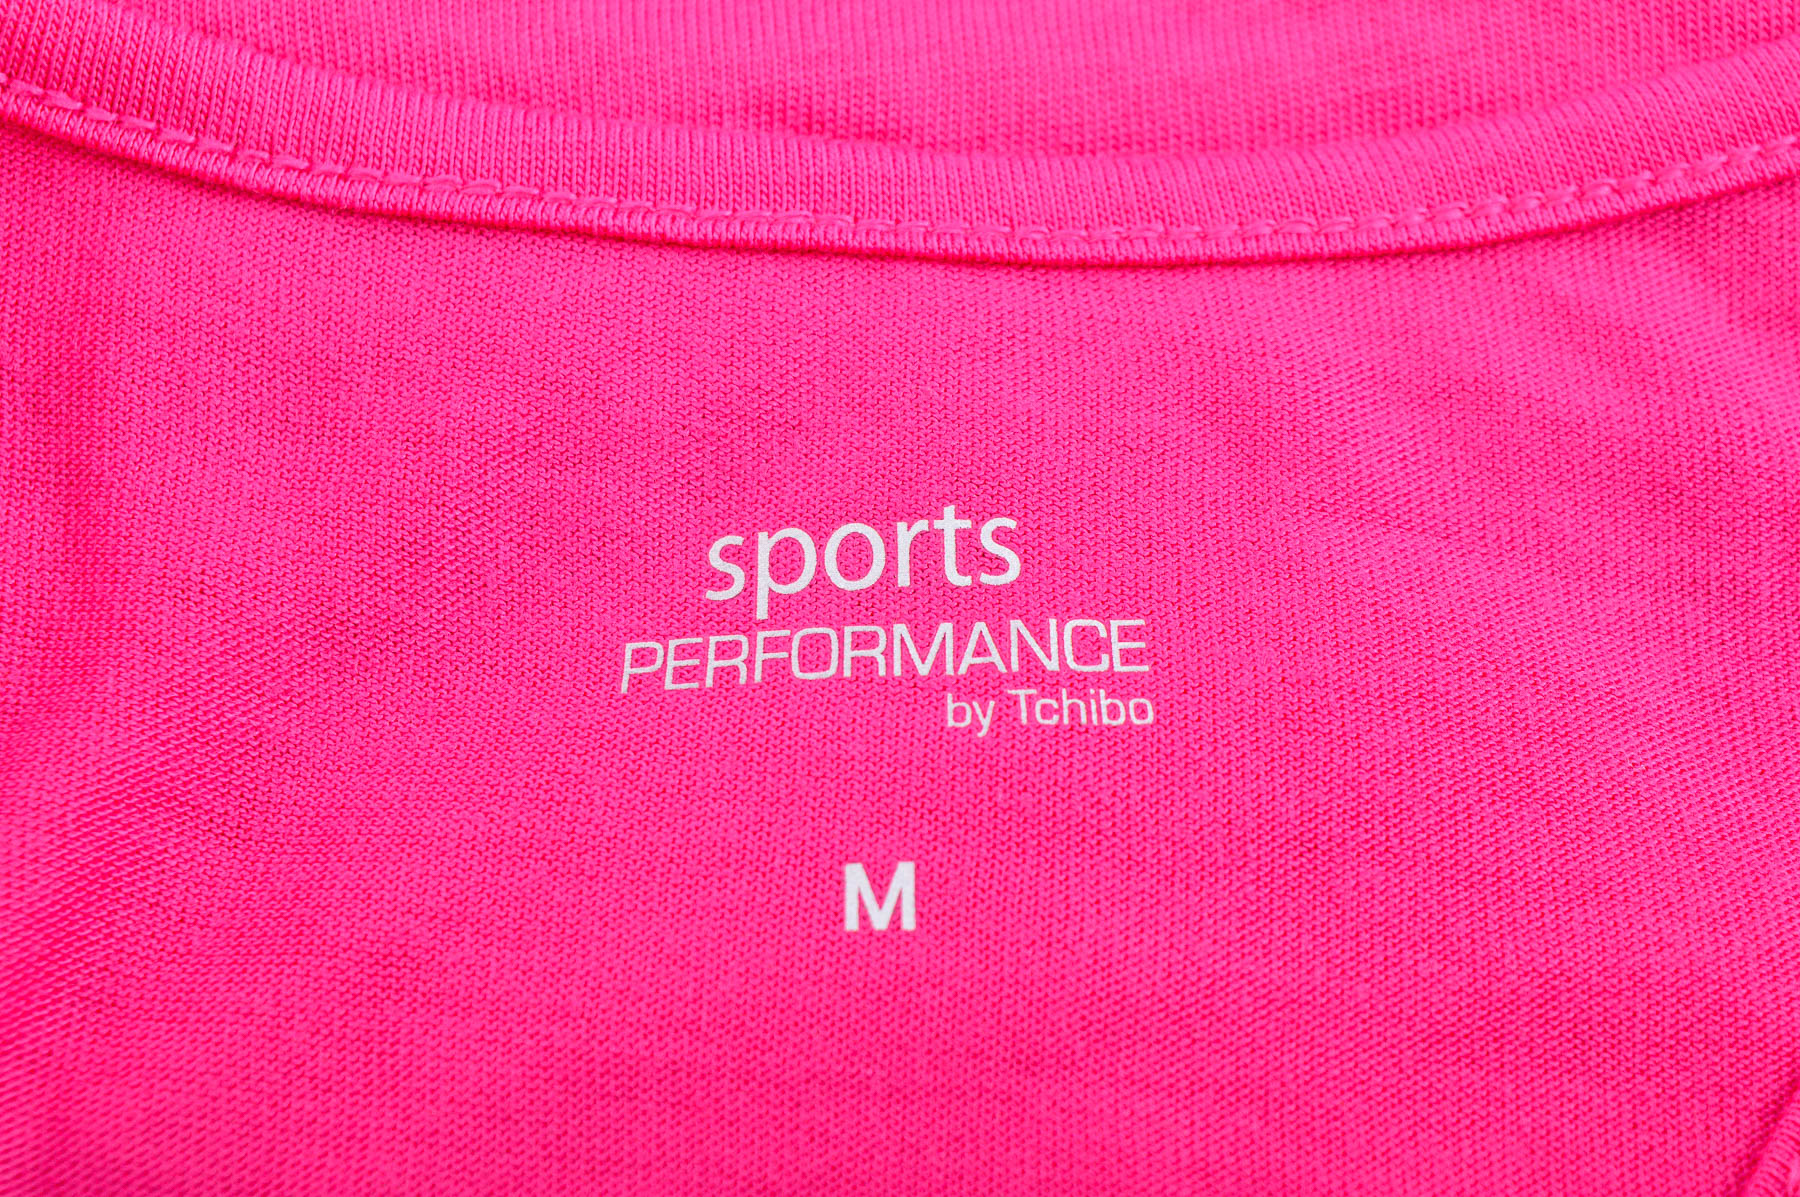 Γυνεκείο τοπ - Sports PERFORMANCE by Tchibo - 2